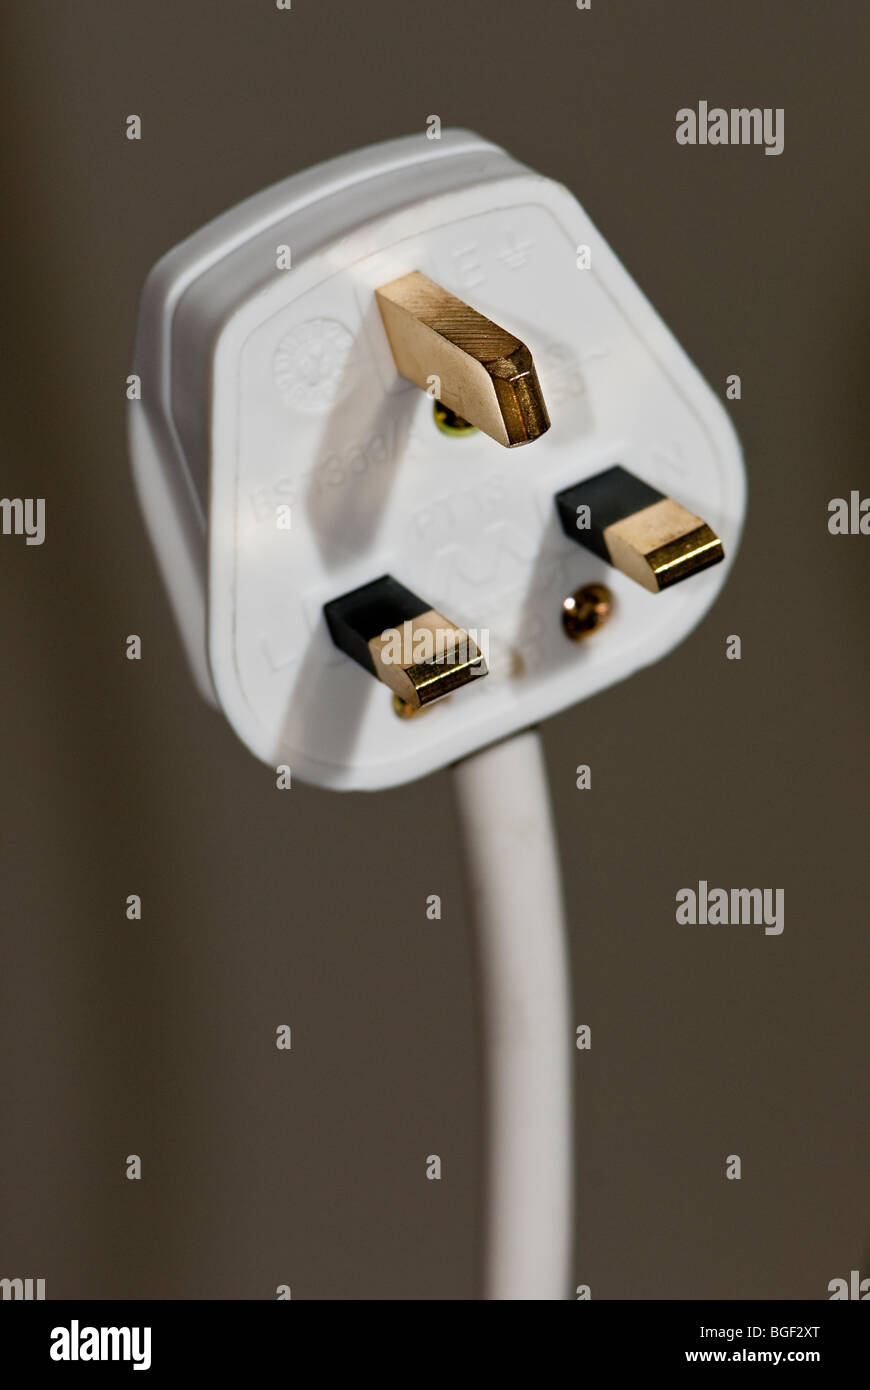 3 pin electric plug Stock Photo